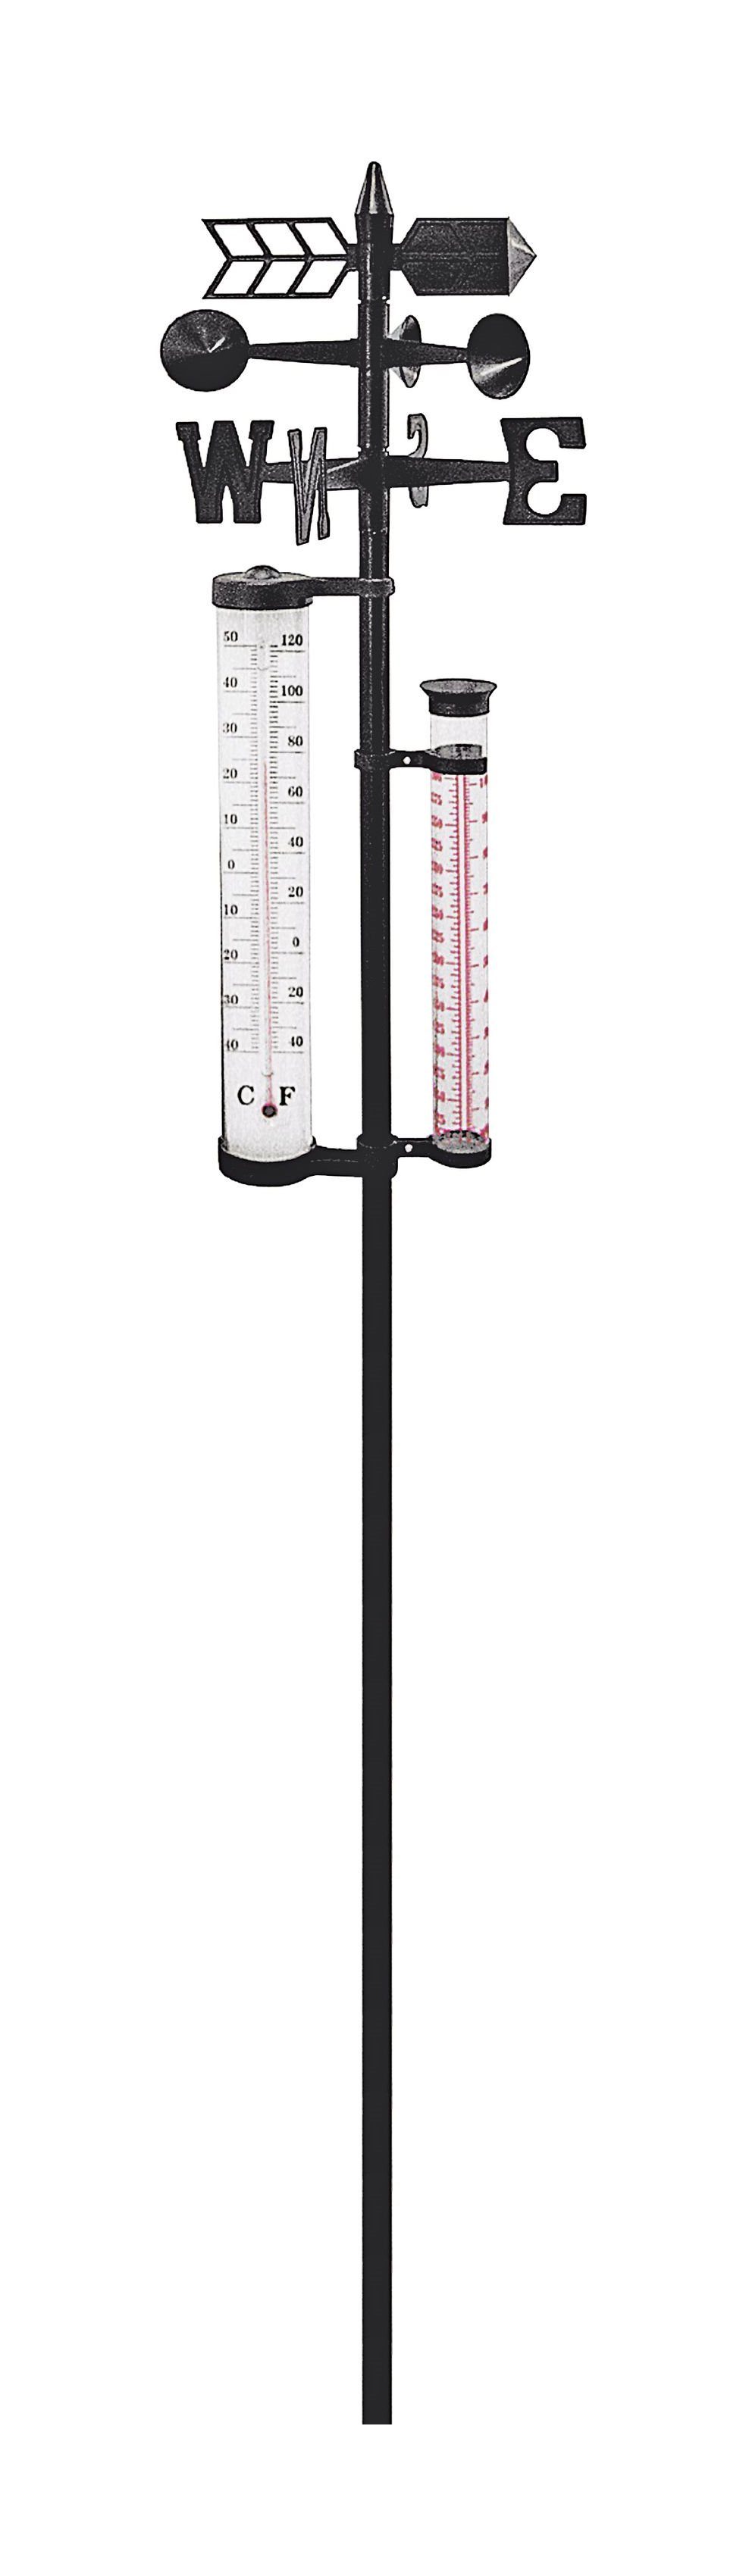 dynamic24 Außenwetterstation (XL Garten Wetterstation 145cm Barometer  Regenmesser Thermometer Windstärke) online kaufen | OTTO